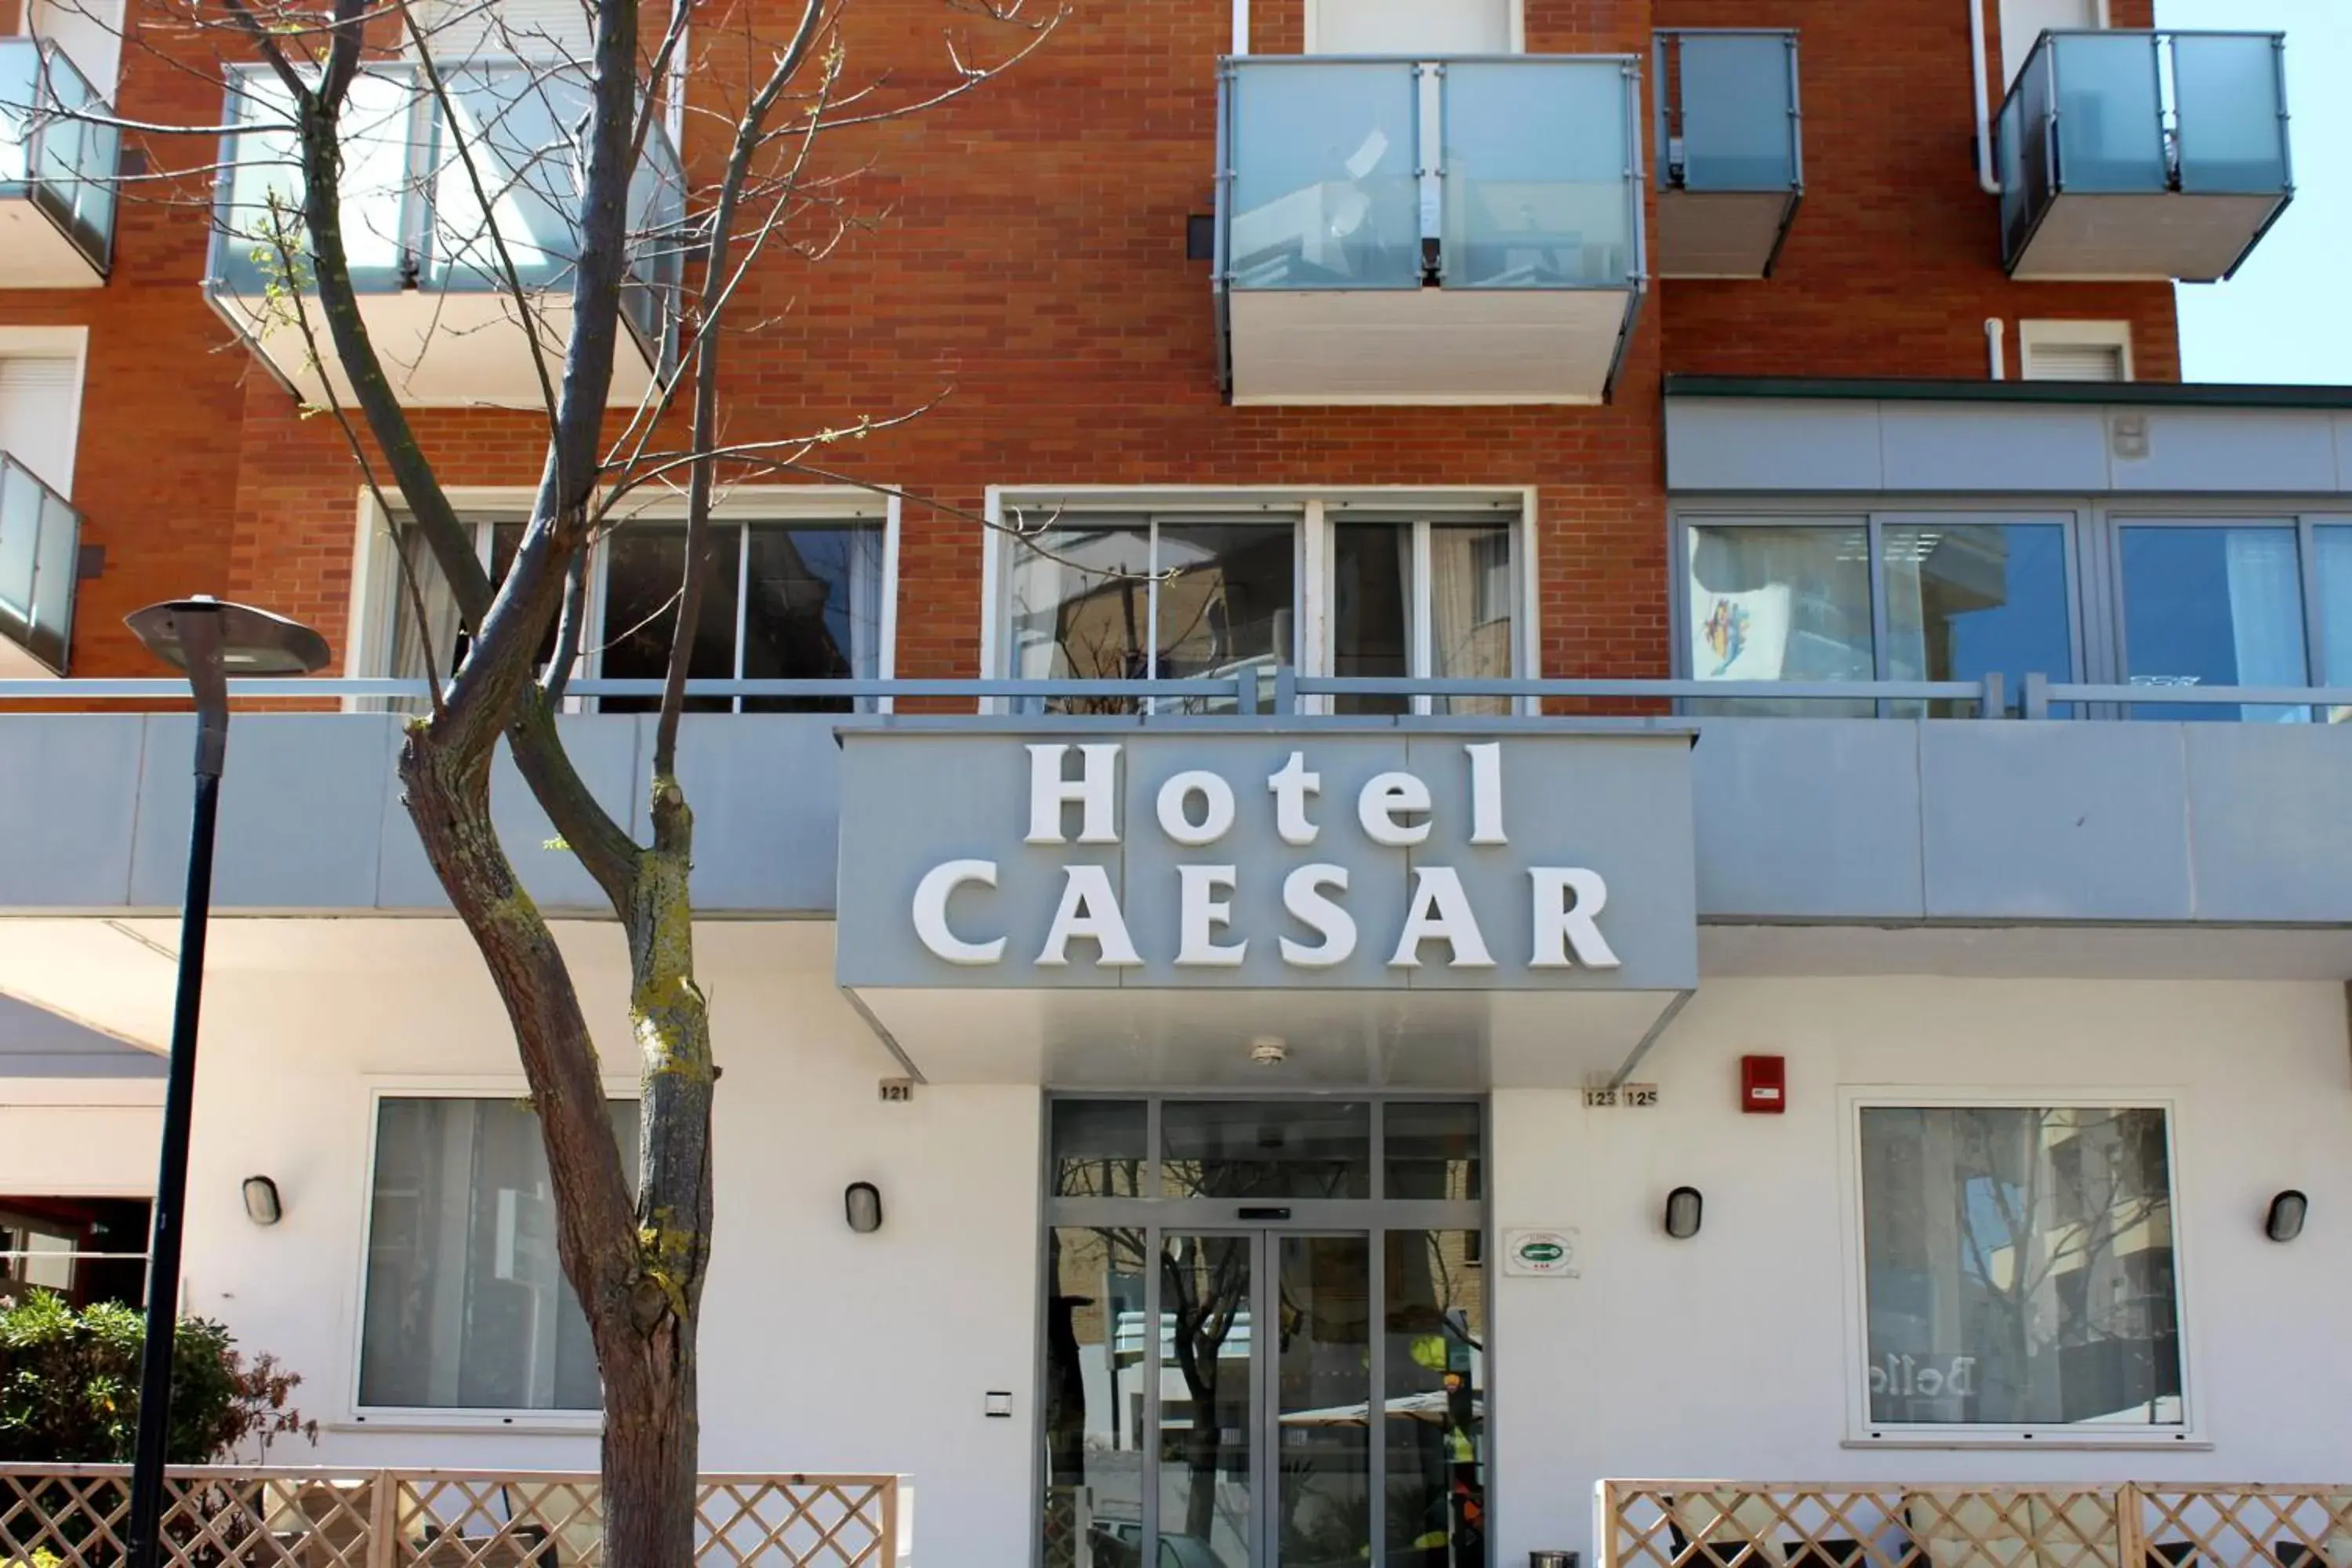 Facade/entrance in Hotel Caesar